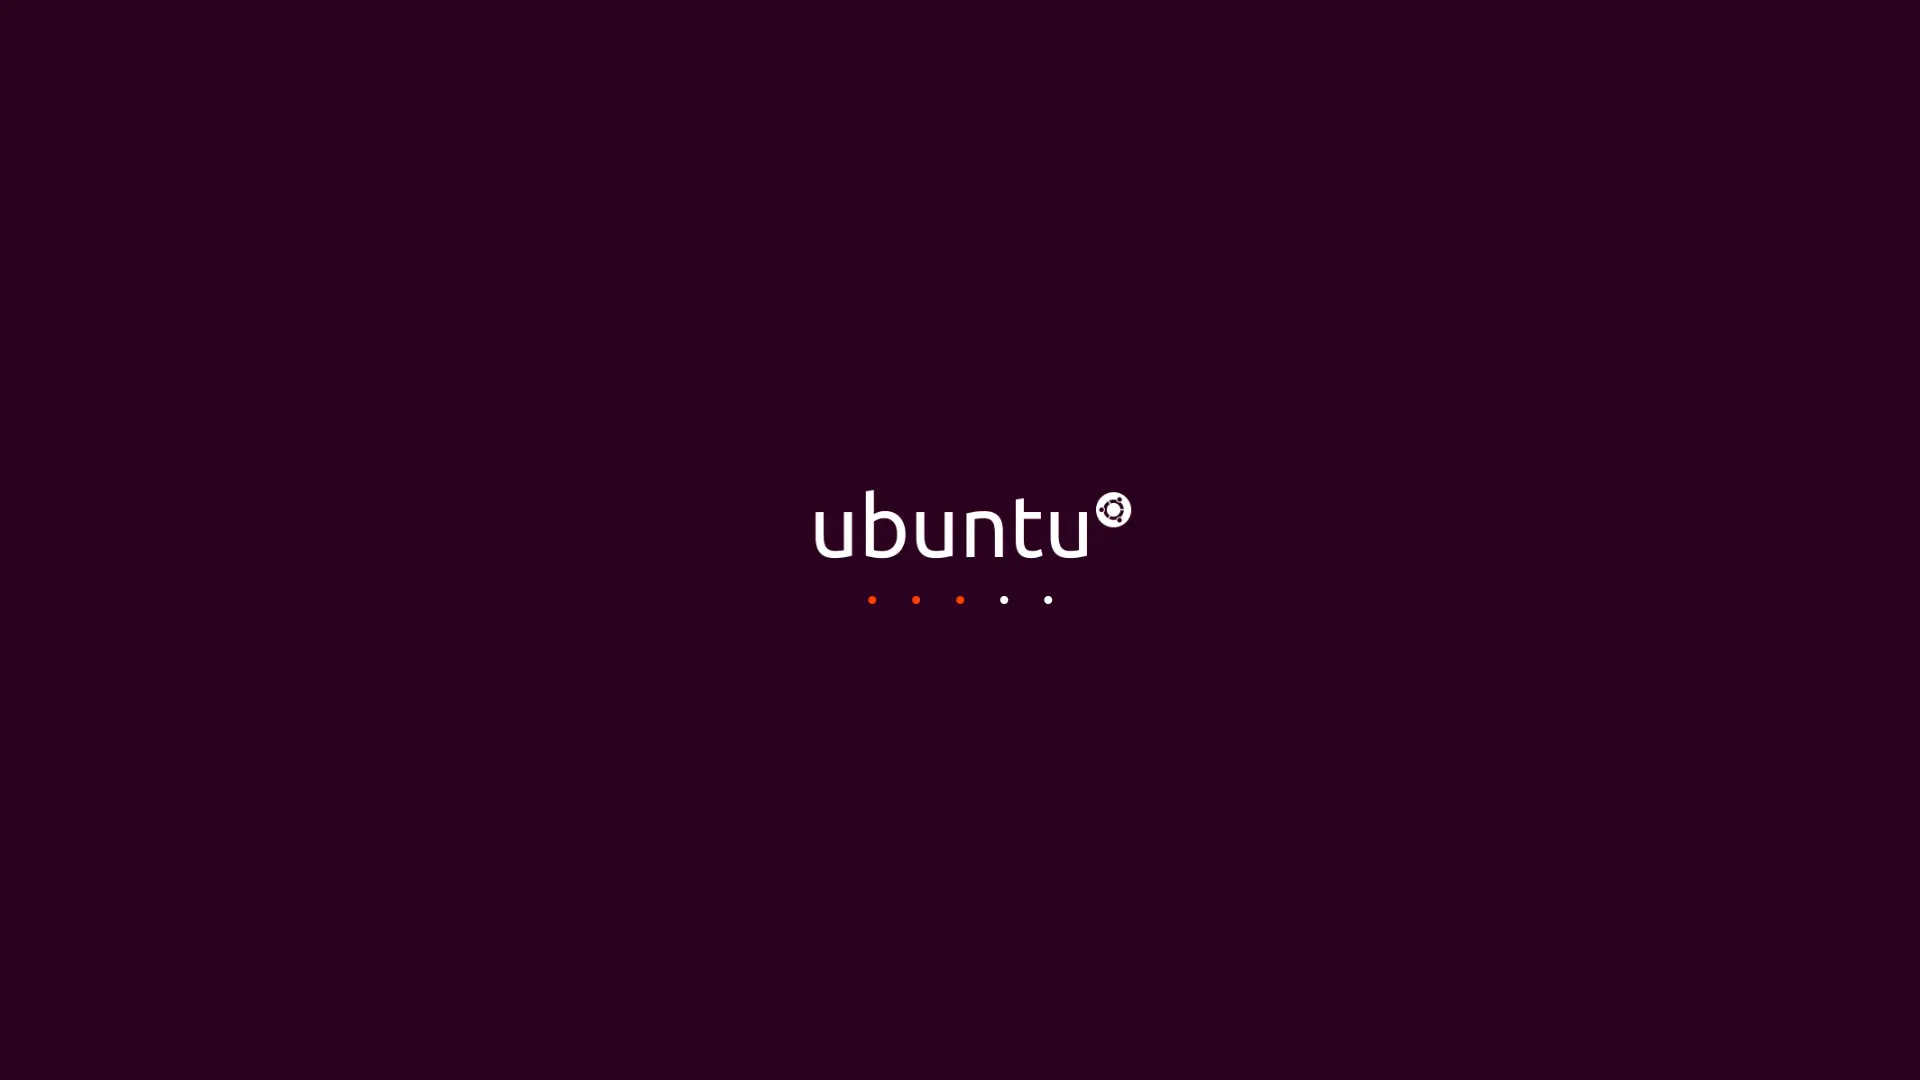 ubuntu-22-04 image background